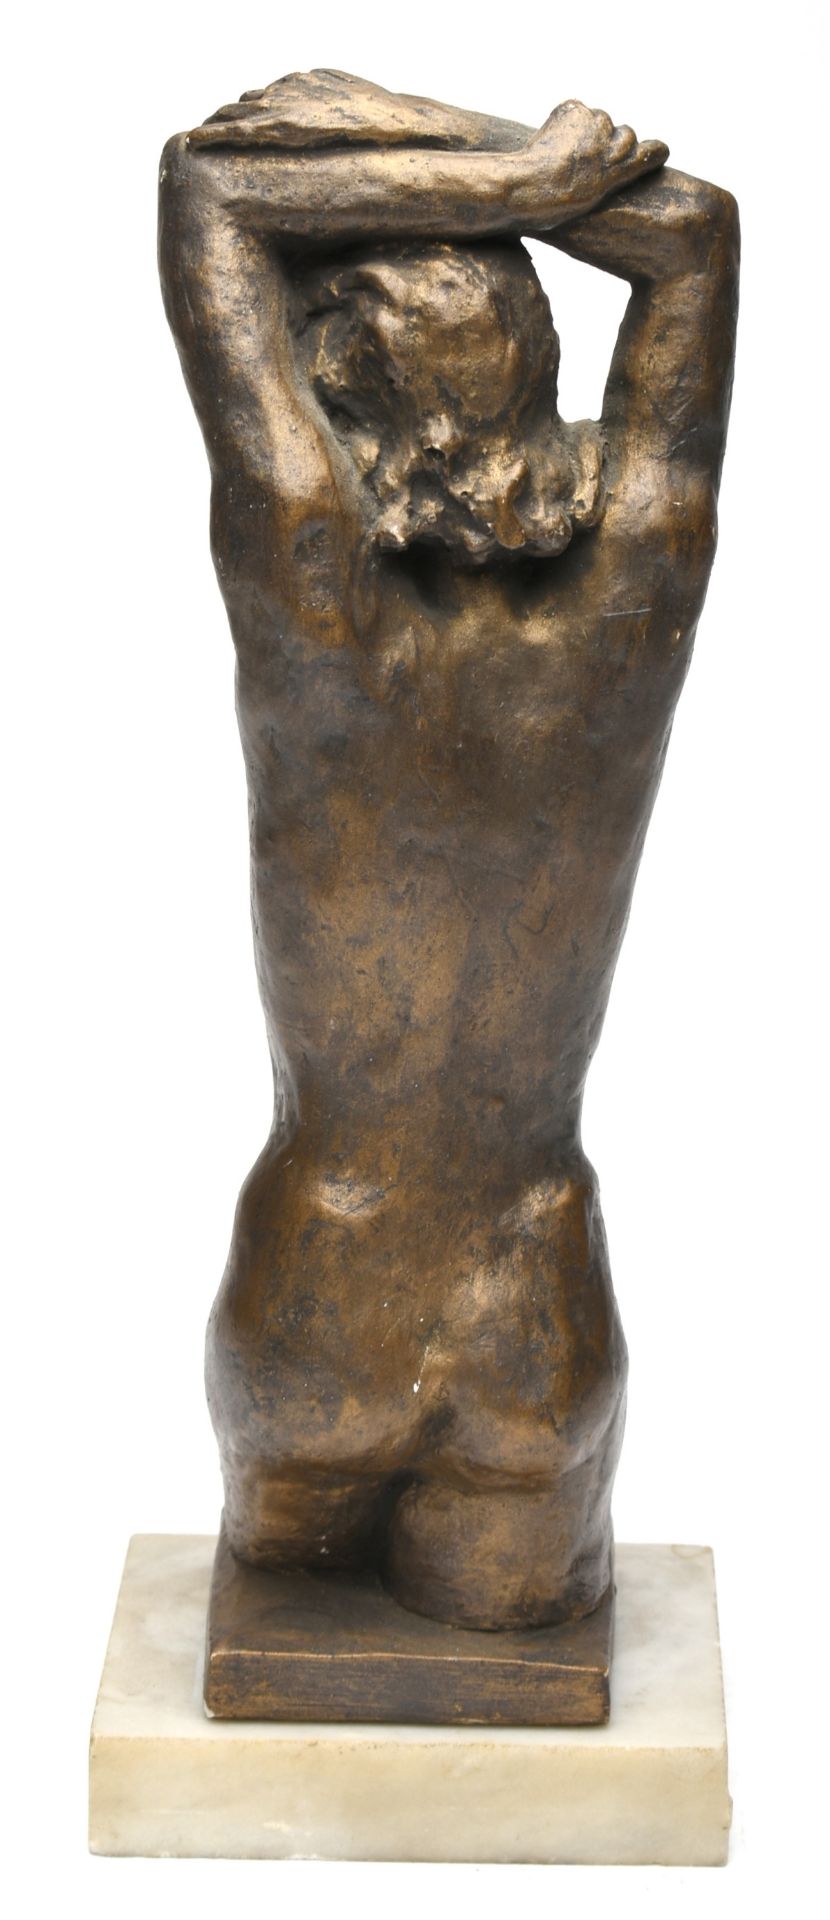 Damenakt Keramik, bronzefarben gefasst, über dem Kopf verschränkte Arme, bis zum Knie in - Bild 3 aus 3